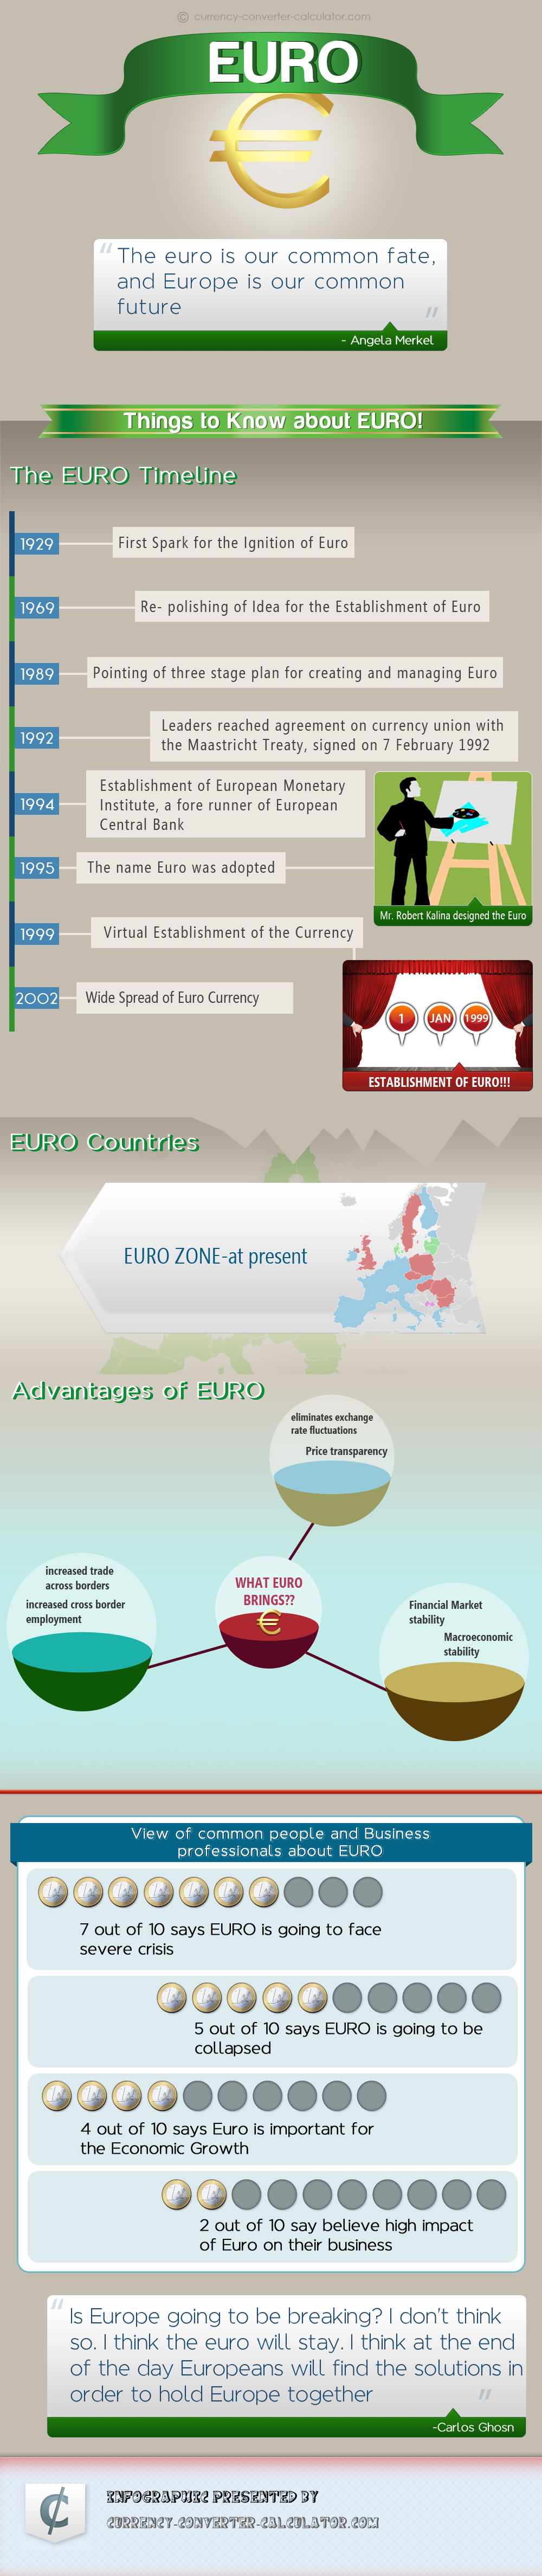 EURO Infographic